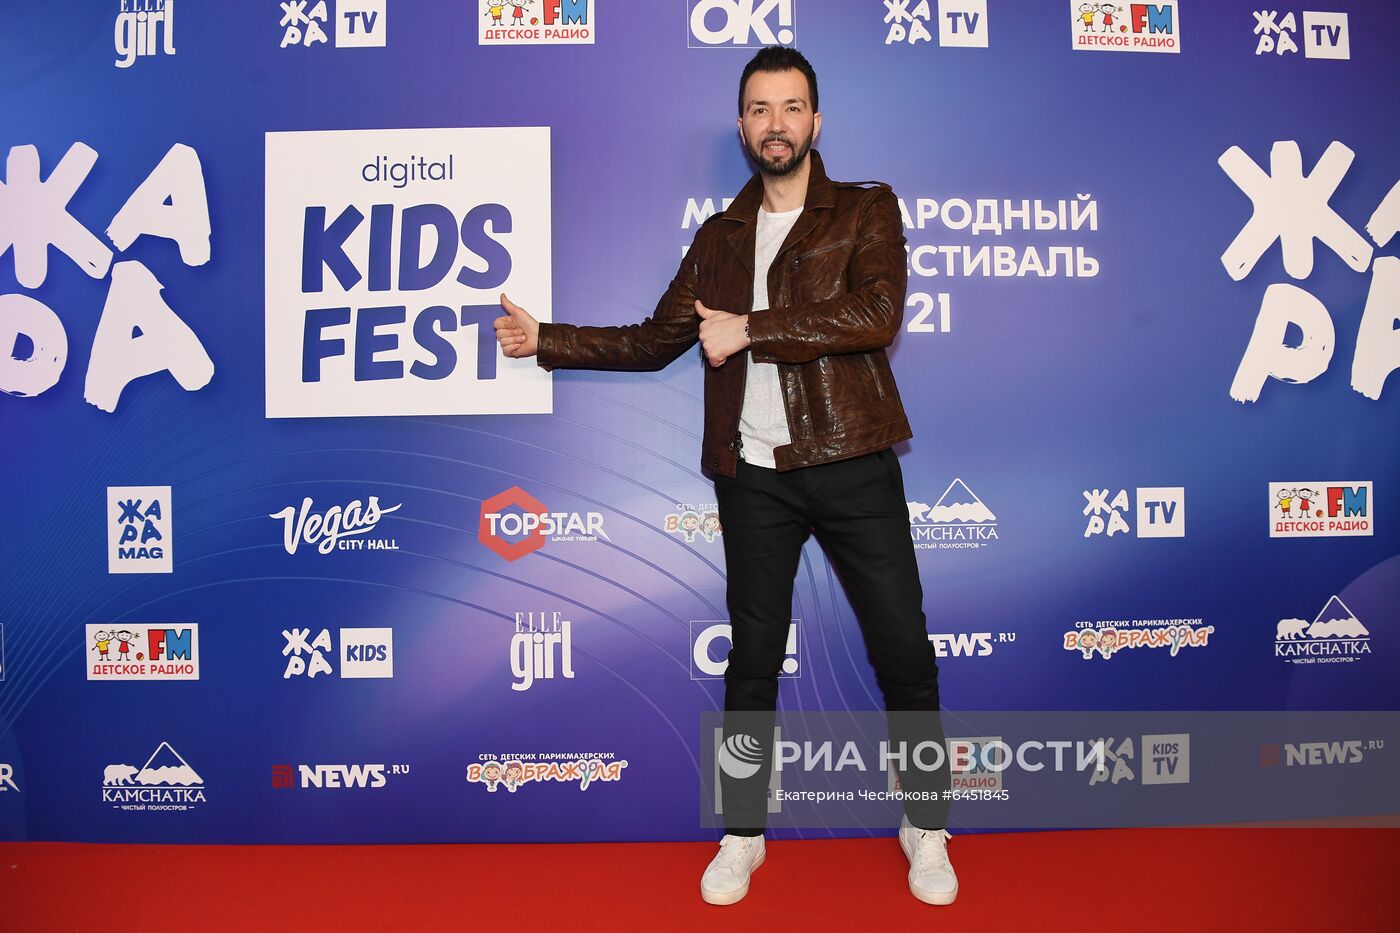 Фестиваль "ЖАРА KIDS FEST"